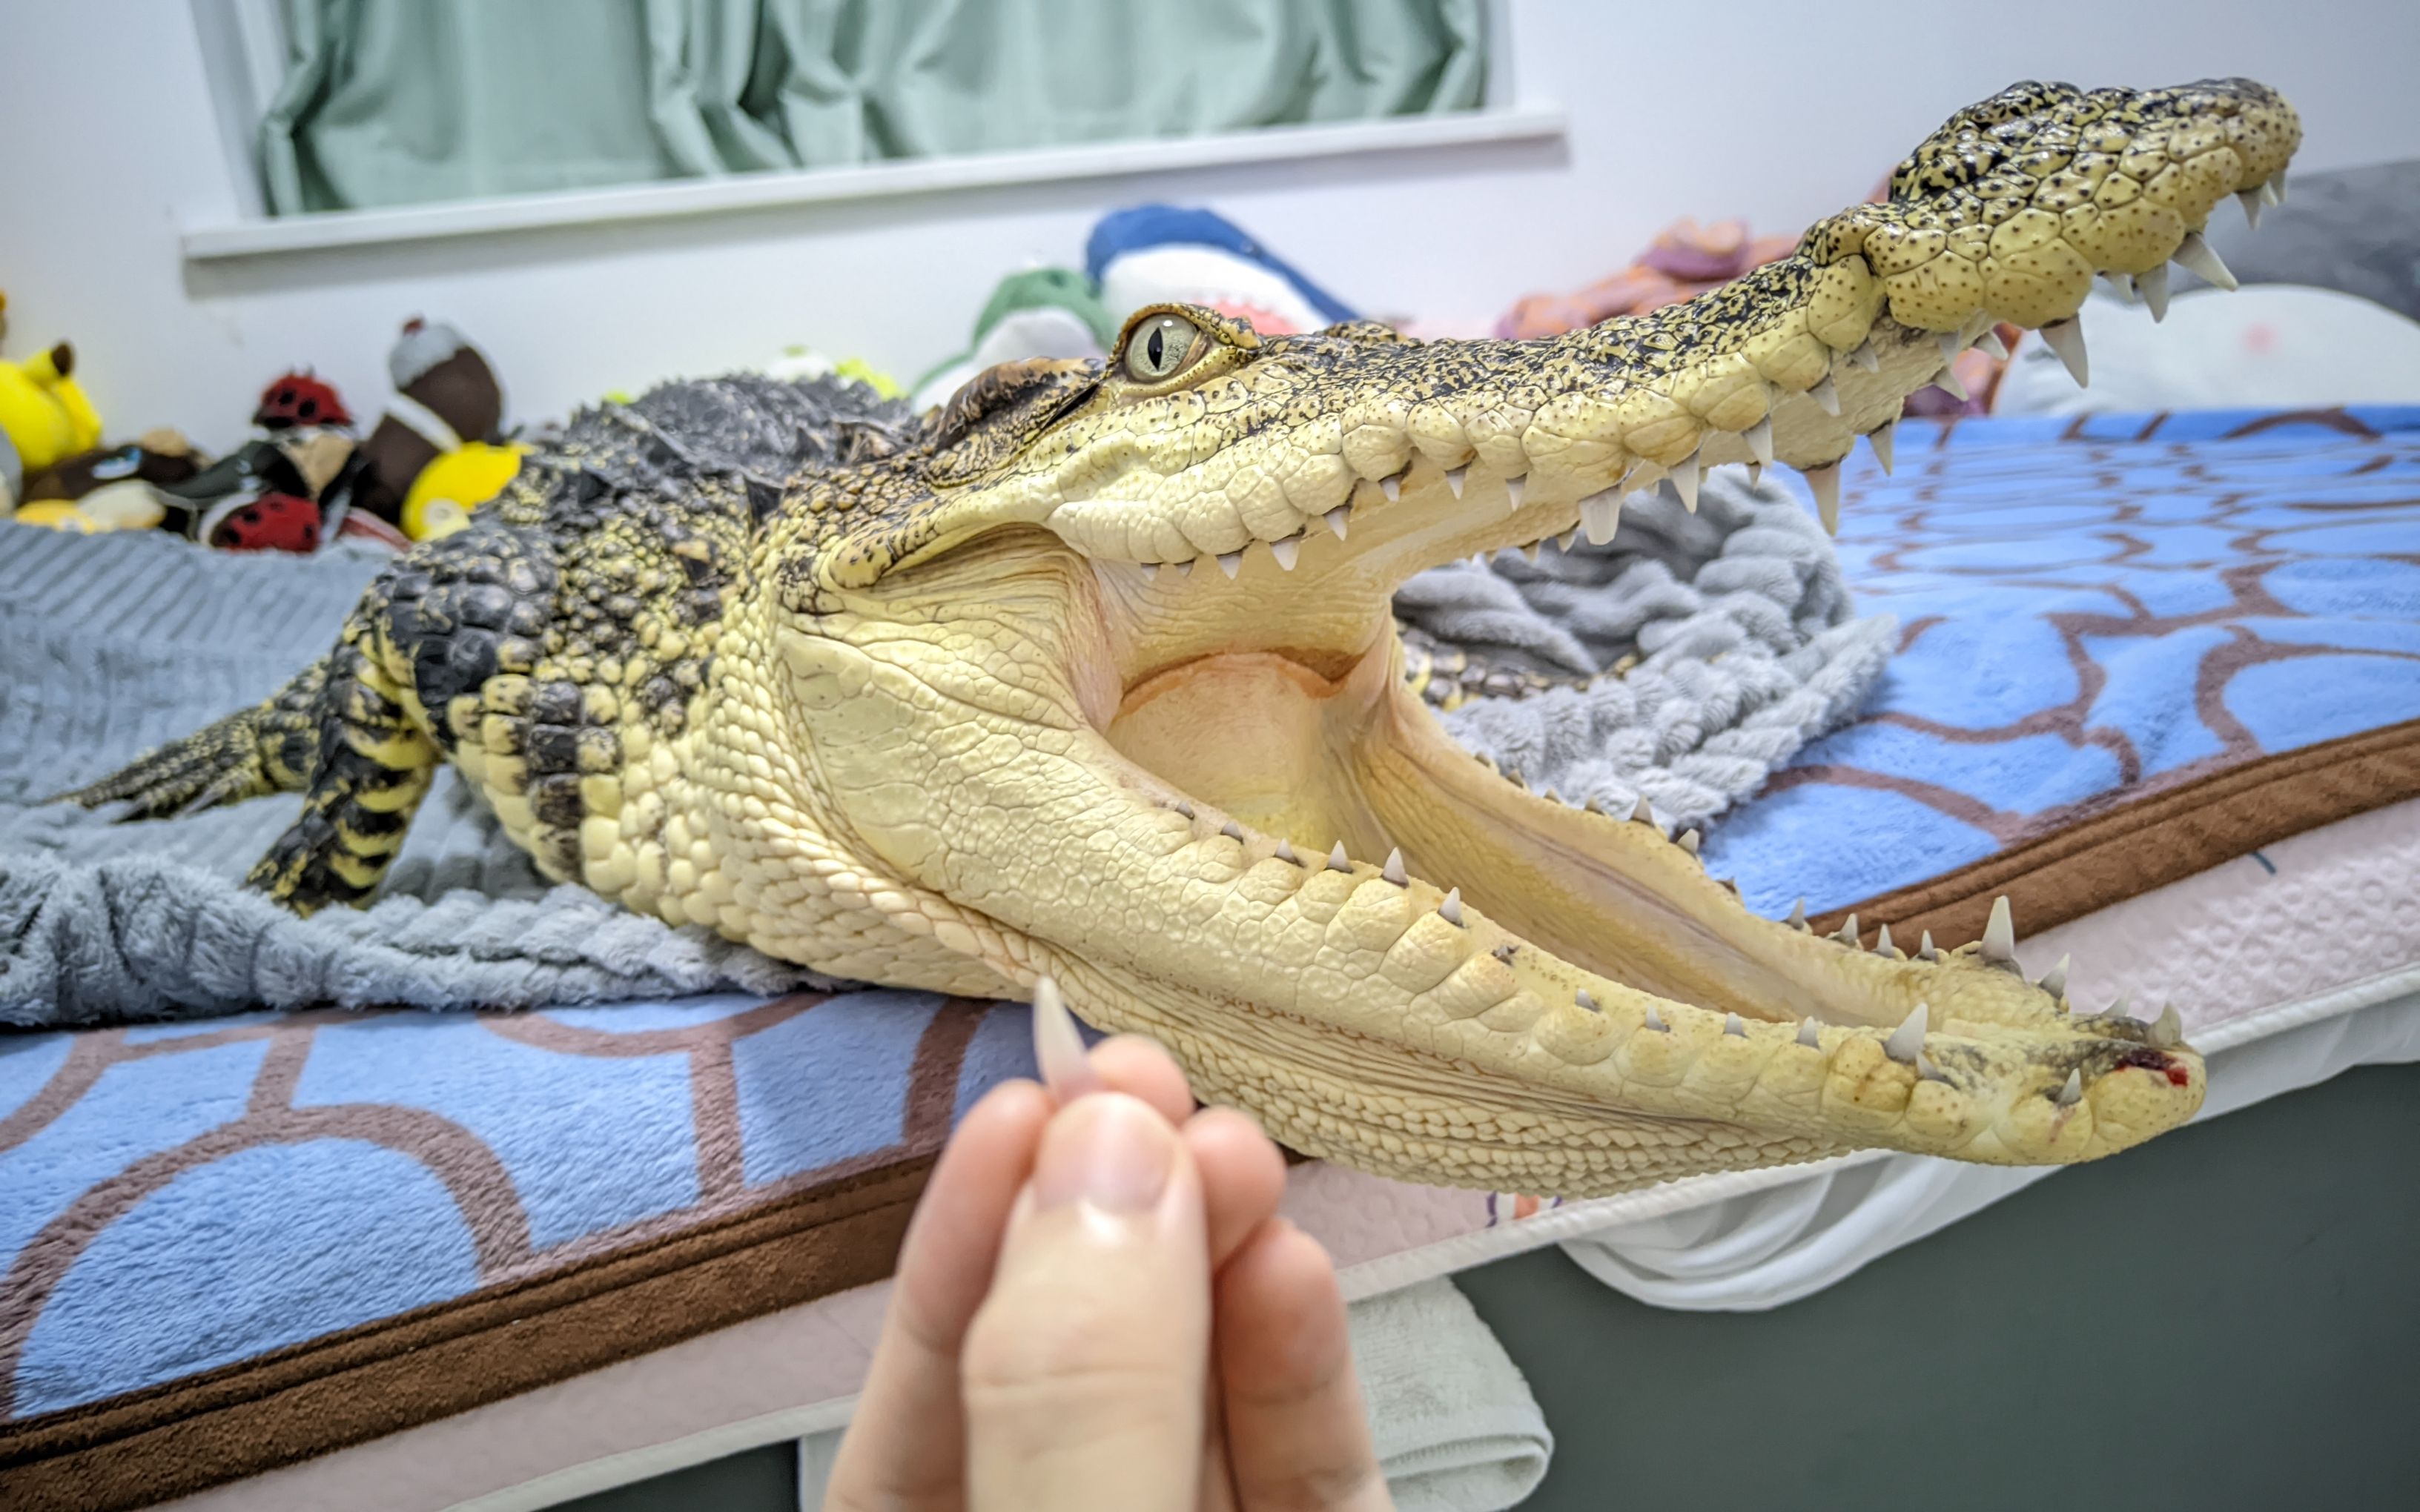 鳄鳄爬上床干饭把自己牙齿干飞了